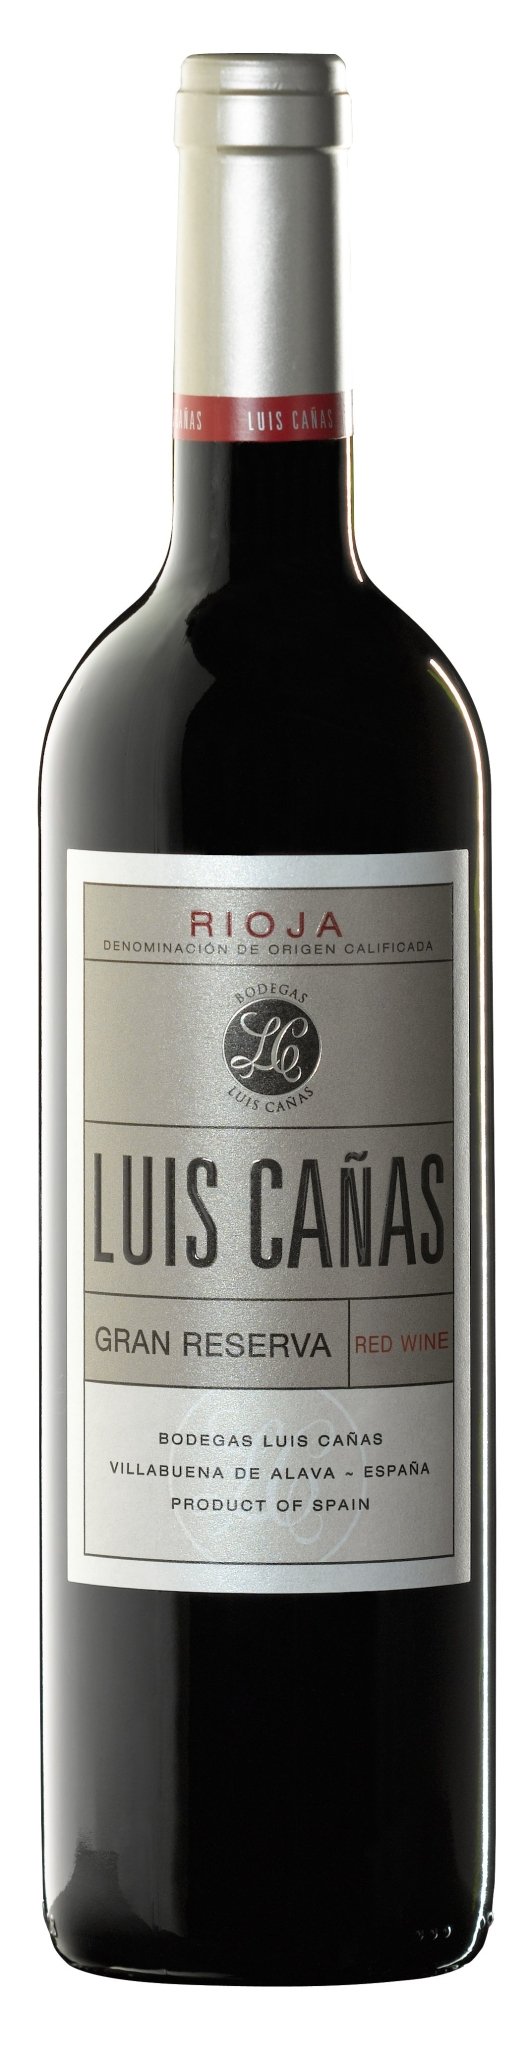 Luis Canas Gran Reserva Rioja 2013 - The Spanish Table